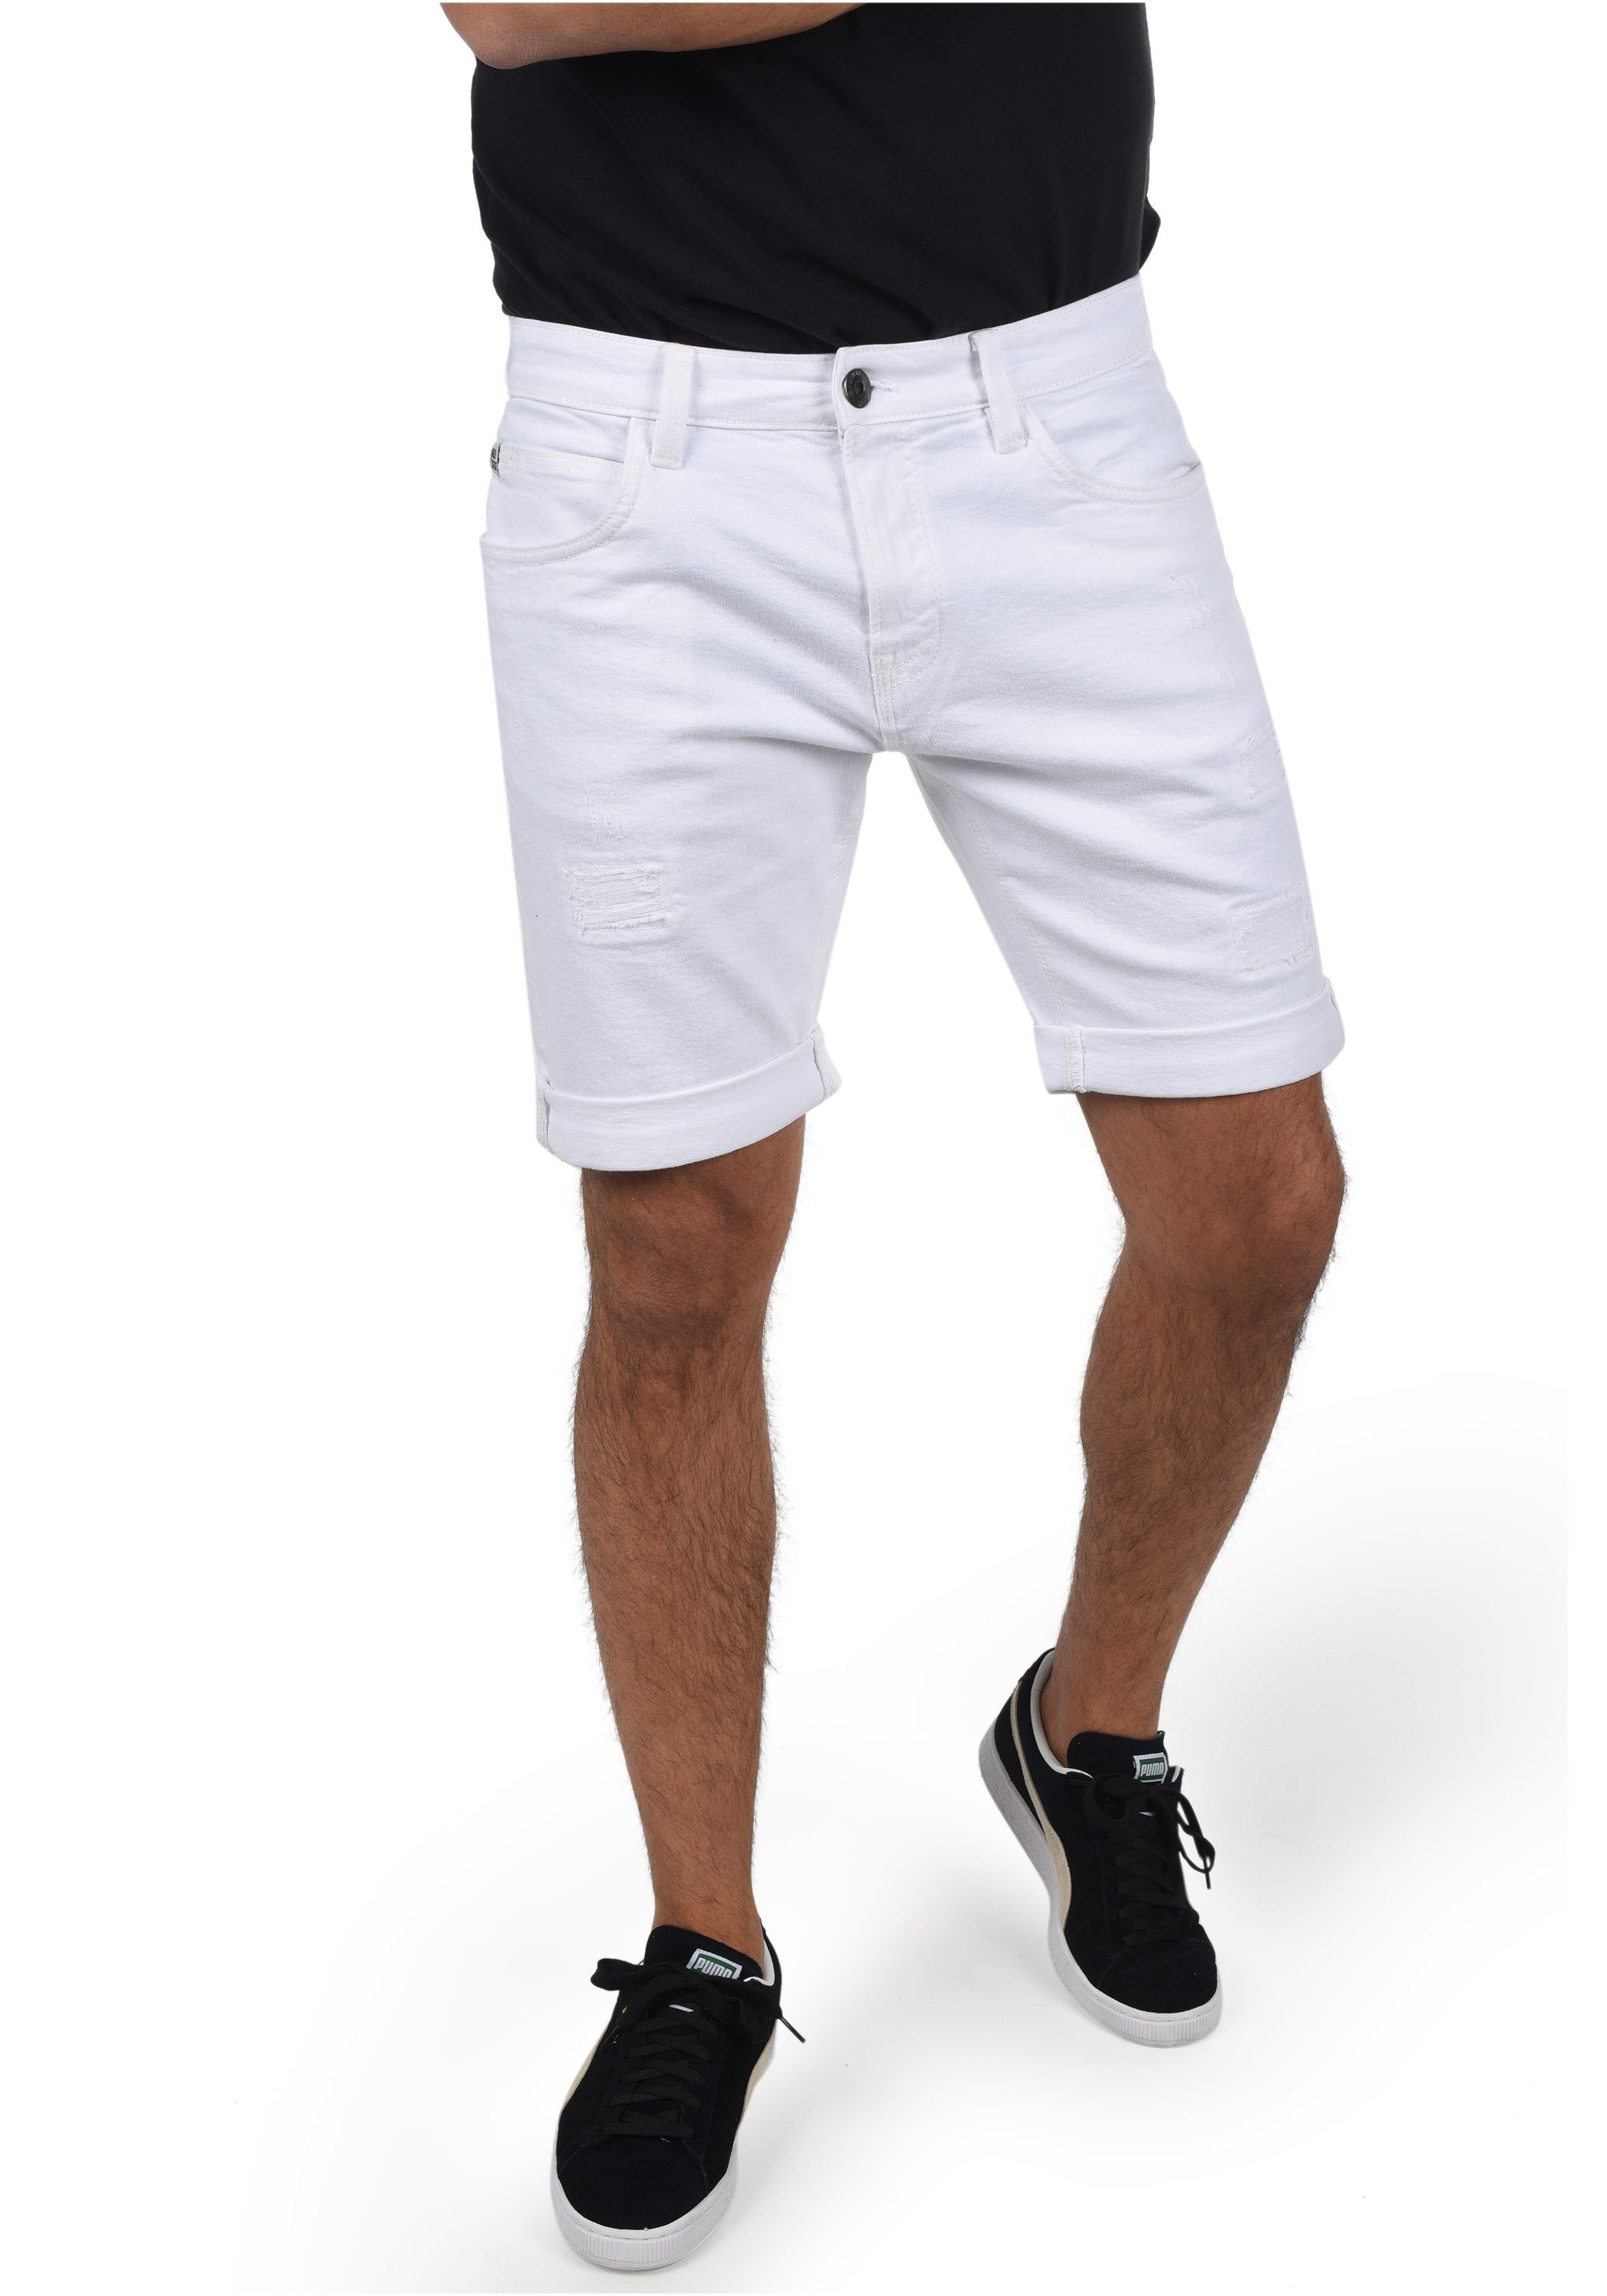 Weiße Bermudas für Herren kaufen » Weiße Bermuda Shorts | OTTO